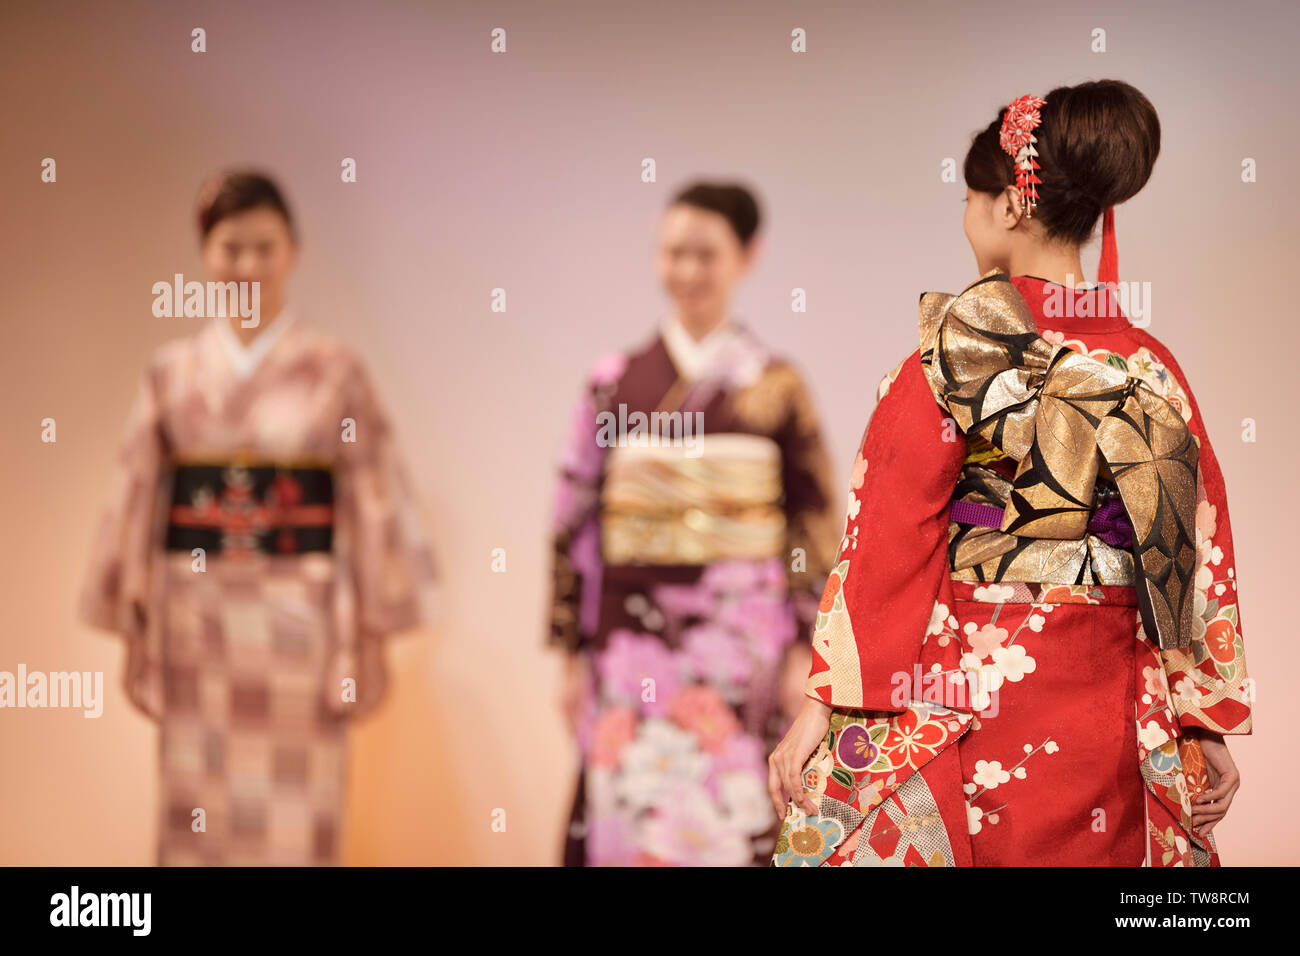 Nahaufnahme von einem komplizierten Kimono obi Gürtel Design in Rot und Gold. Japanische Frauen an einem Kimono Modenschau in Kyoto, Japan. Stockfoto